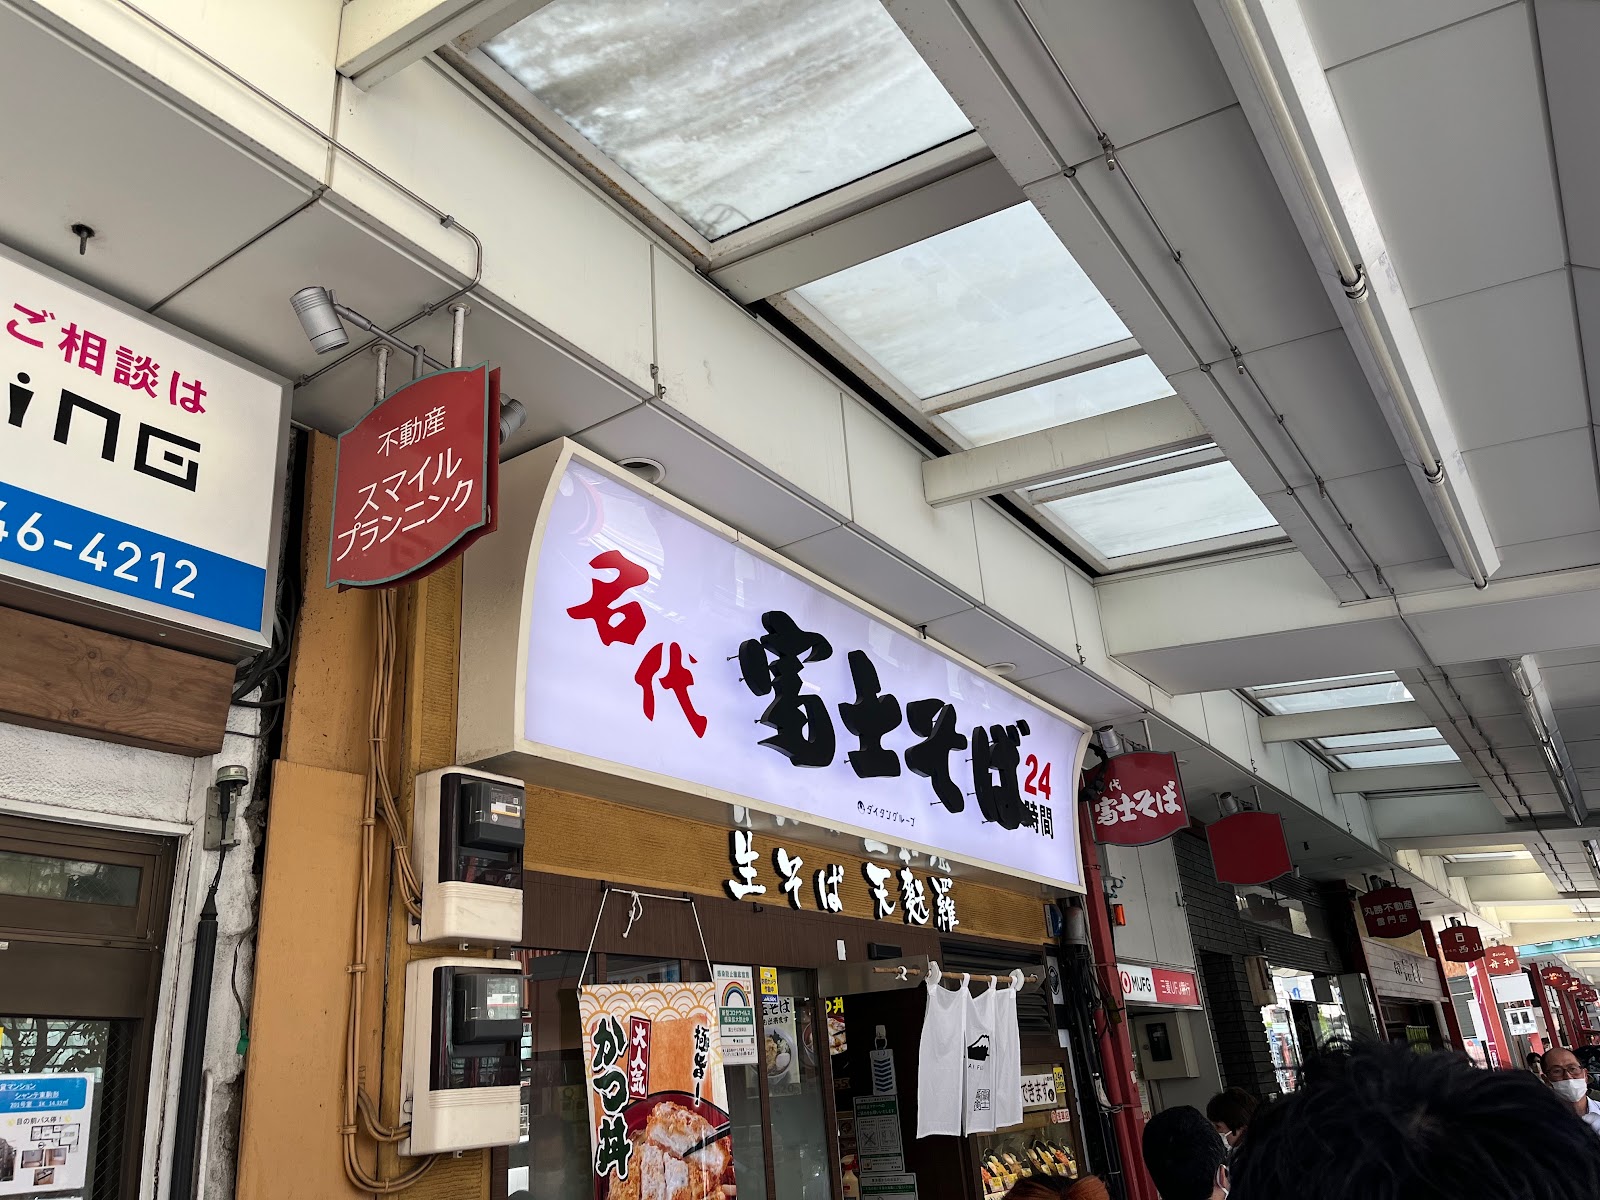 名代 富士そば 浅草店の風景